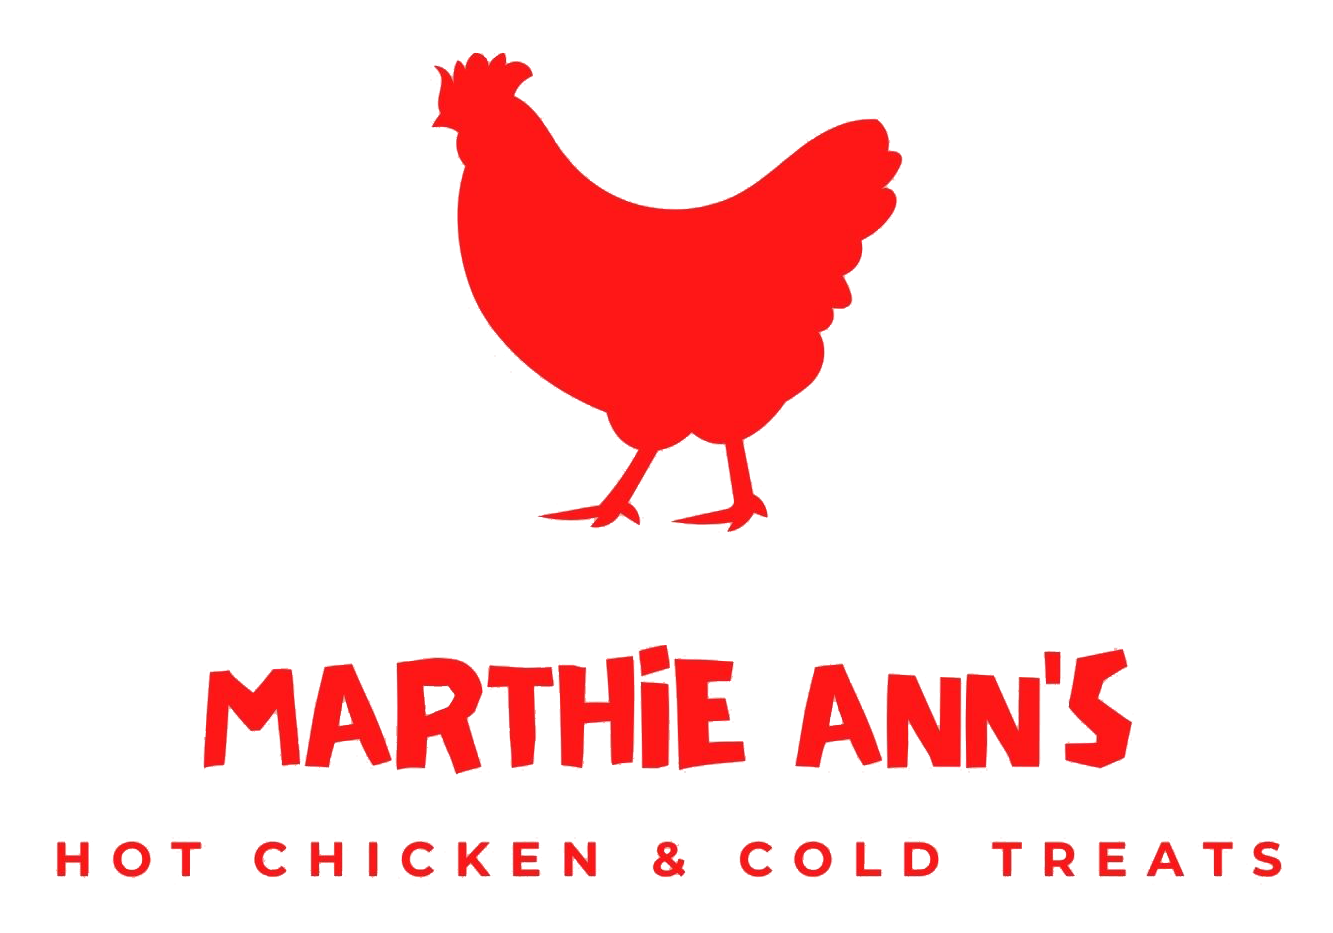 Marthie Ann's logo top